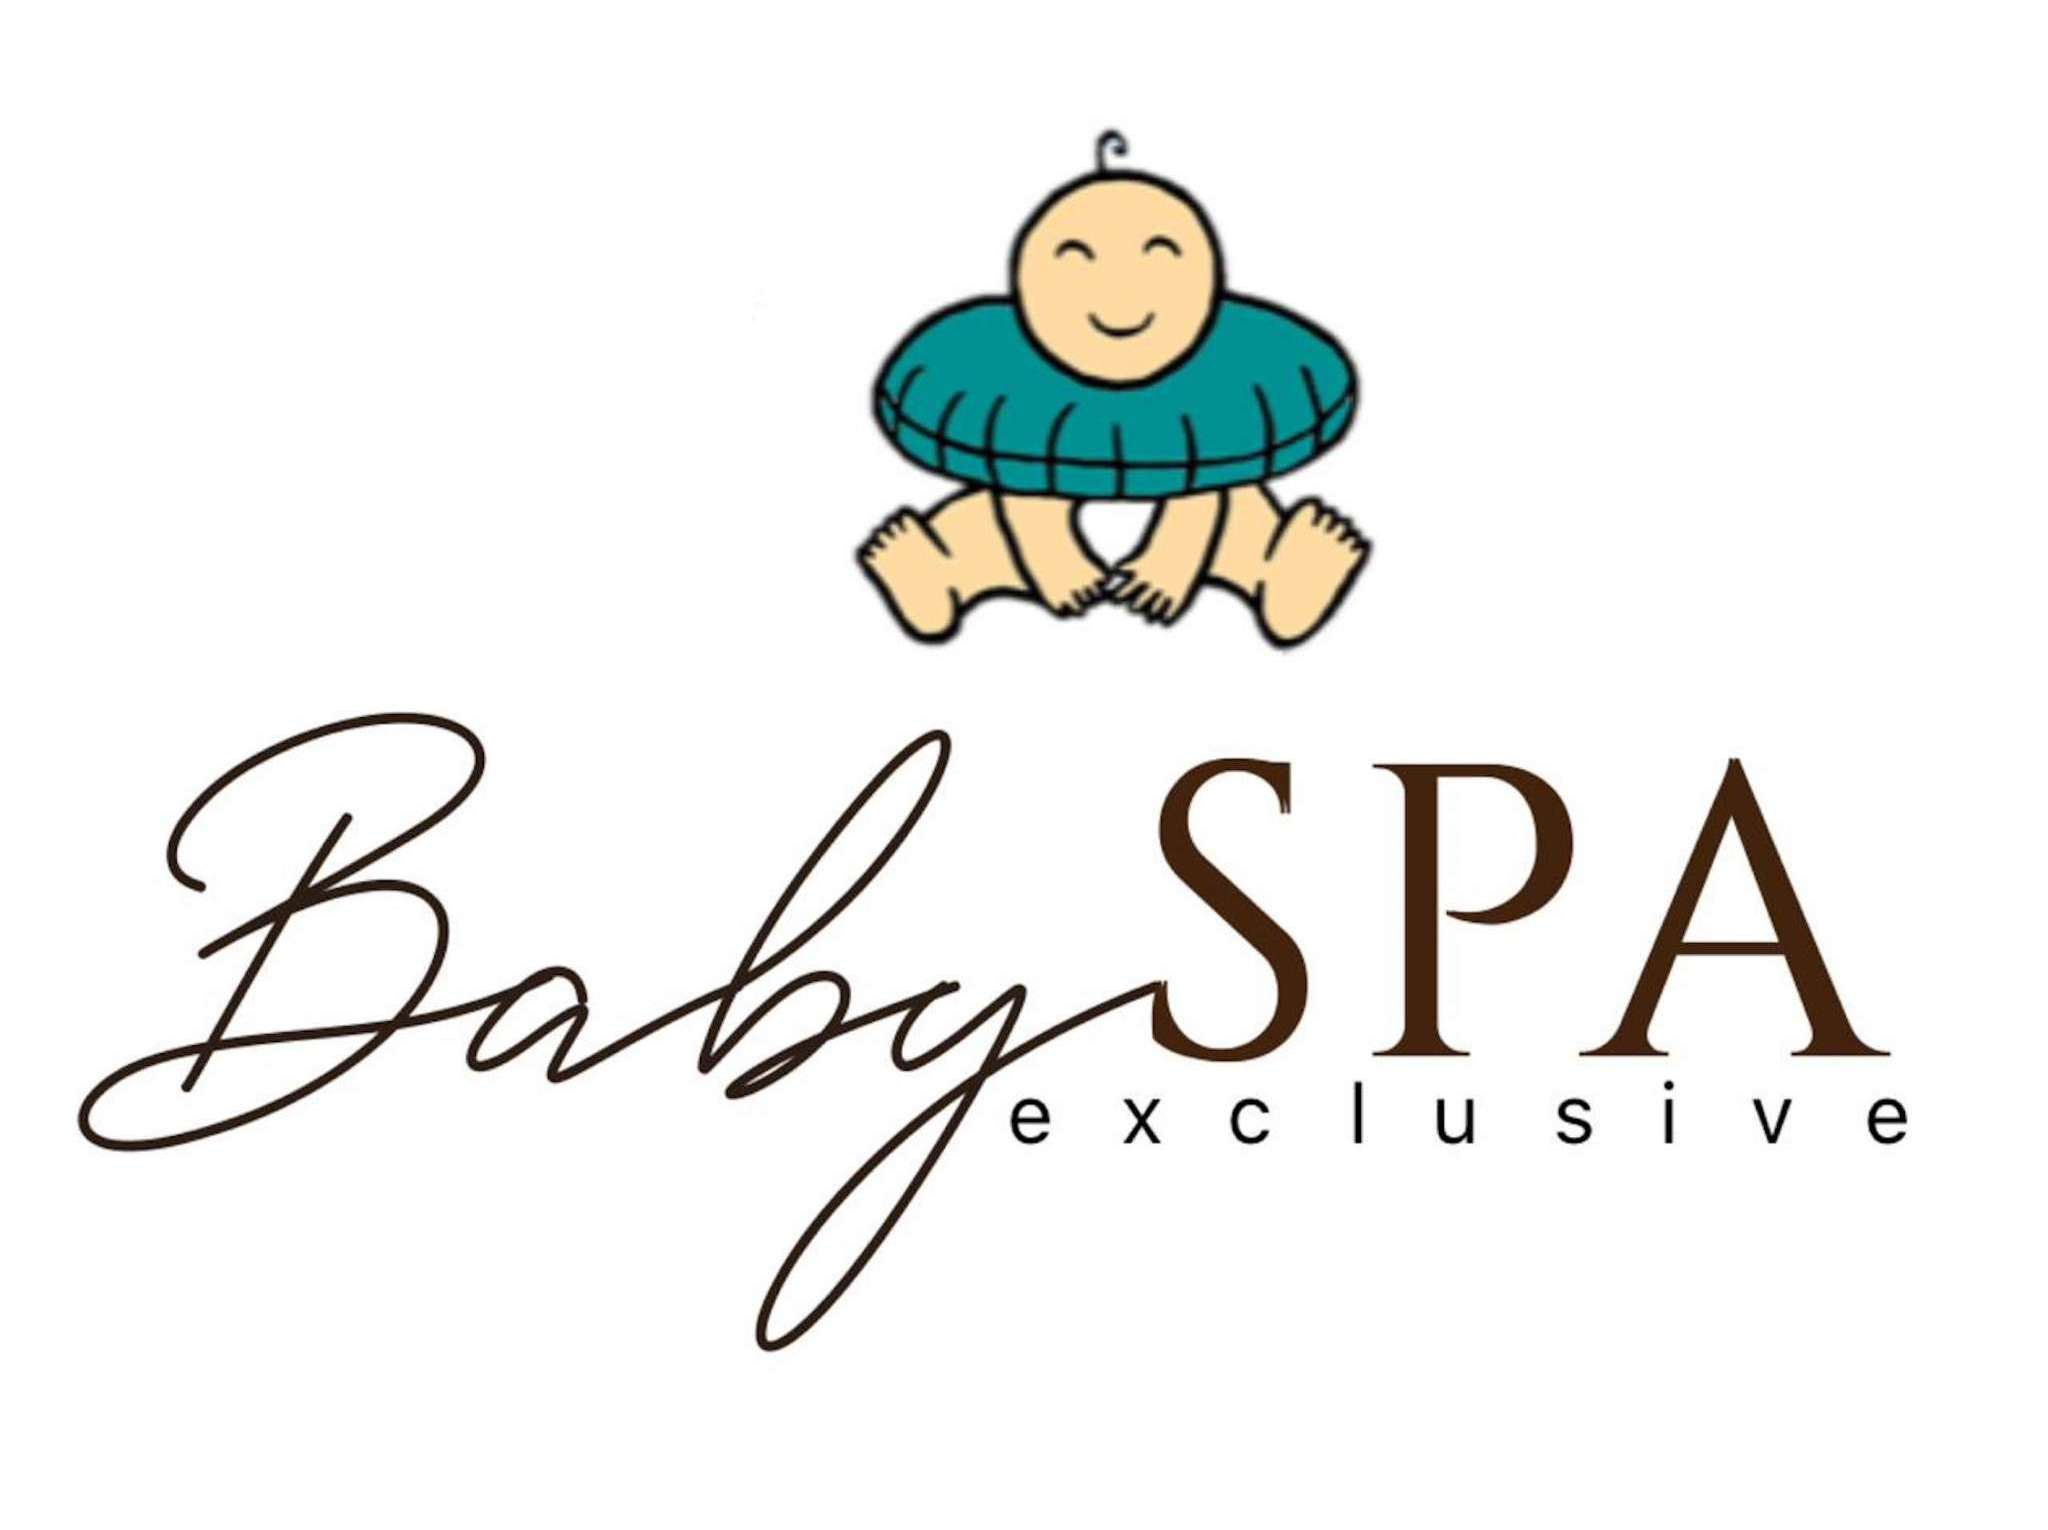 BabySpa exclusive